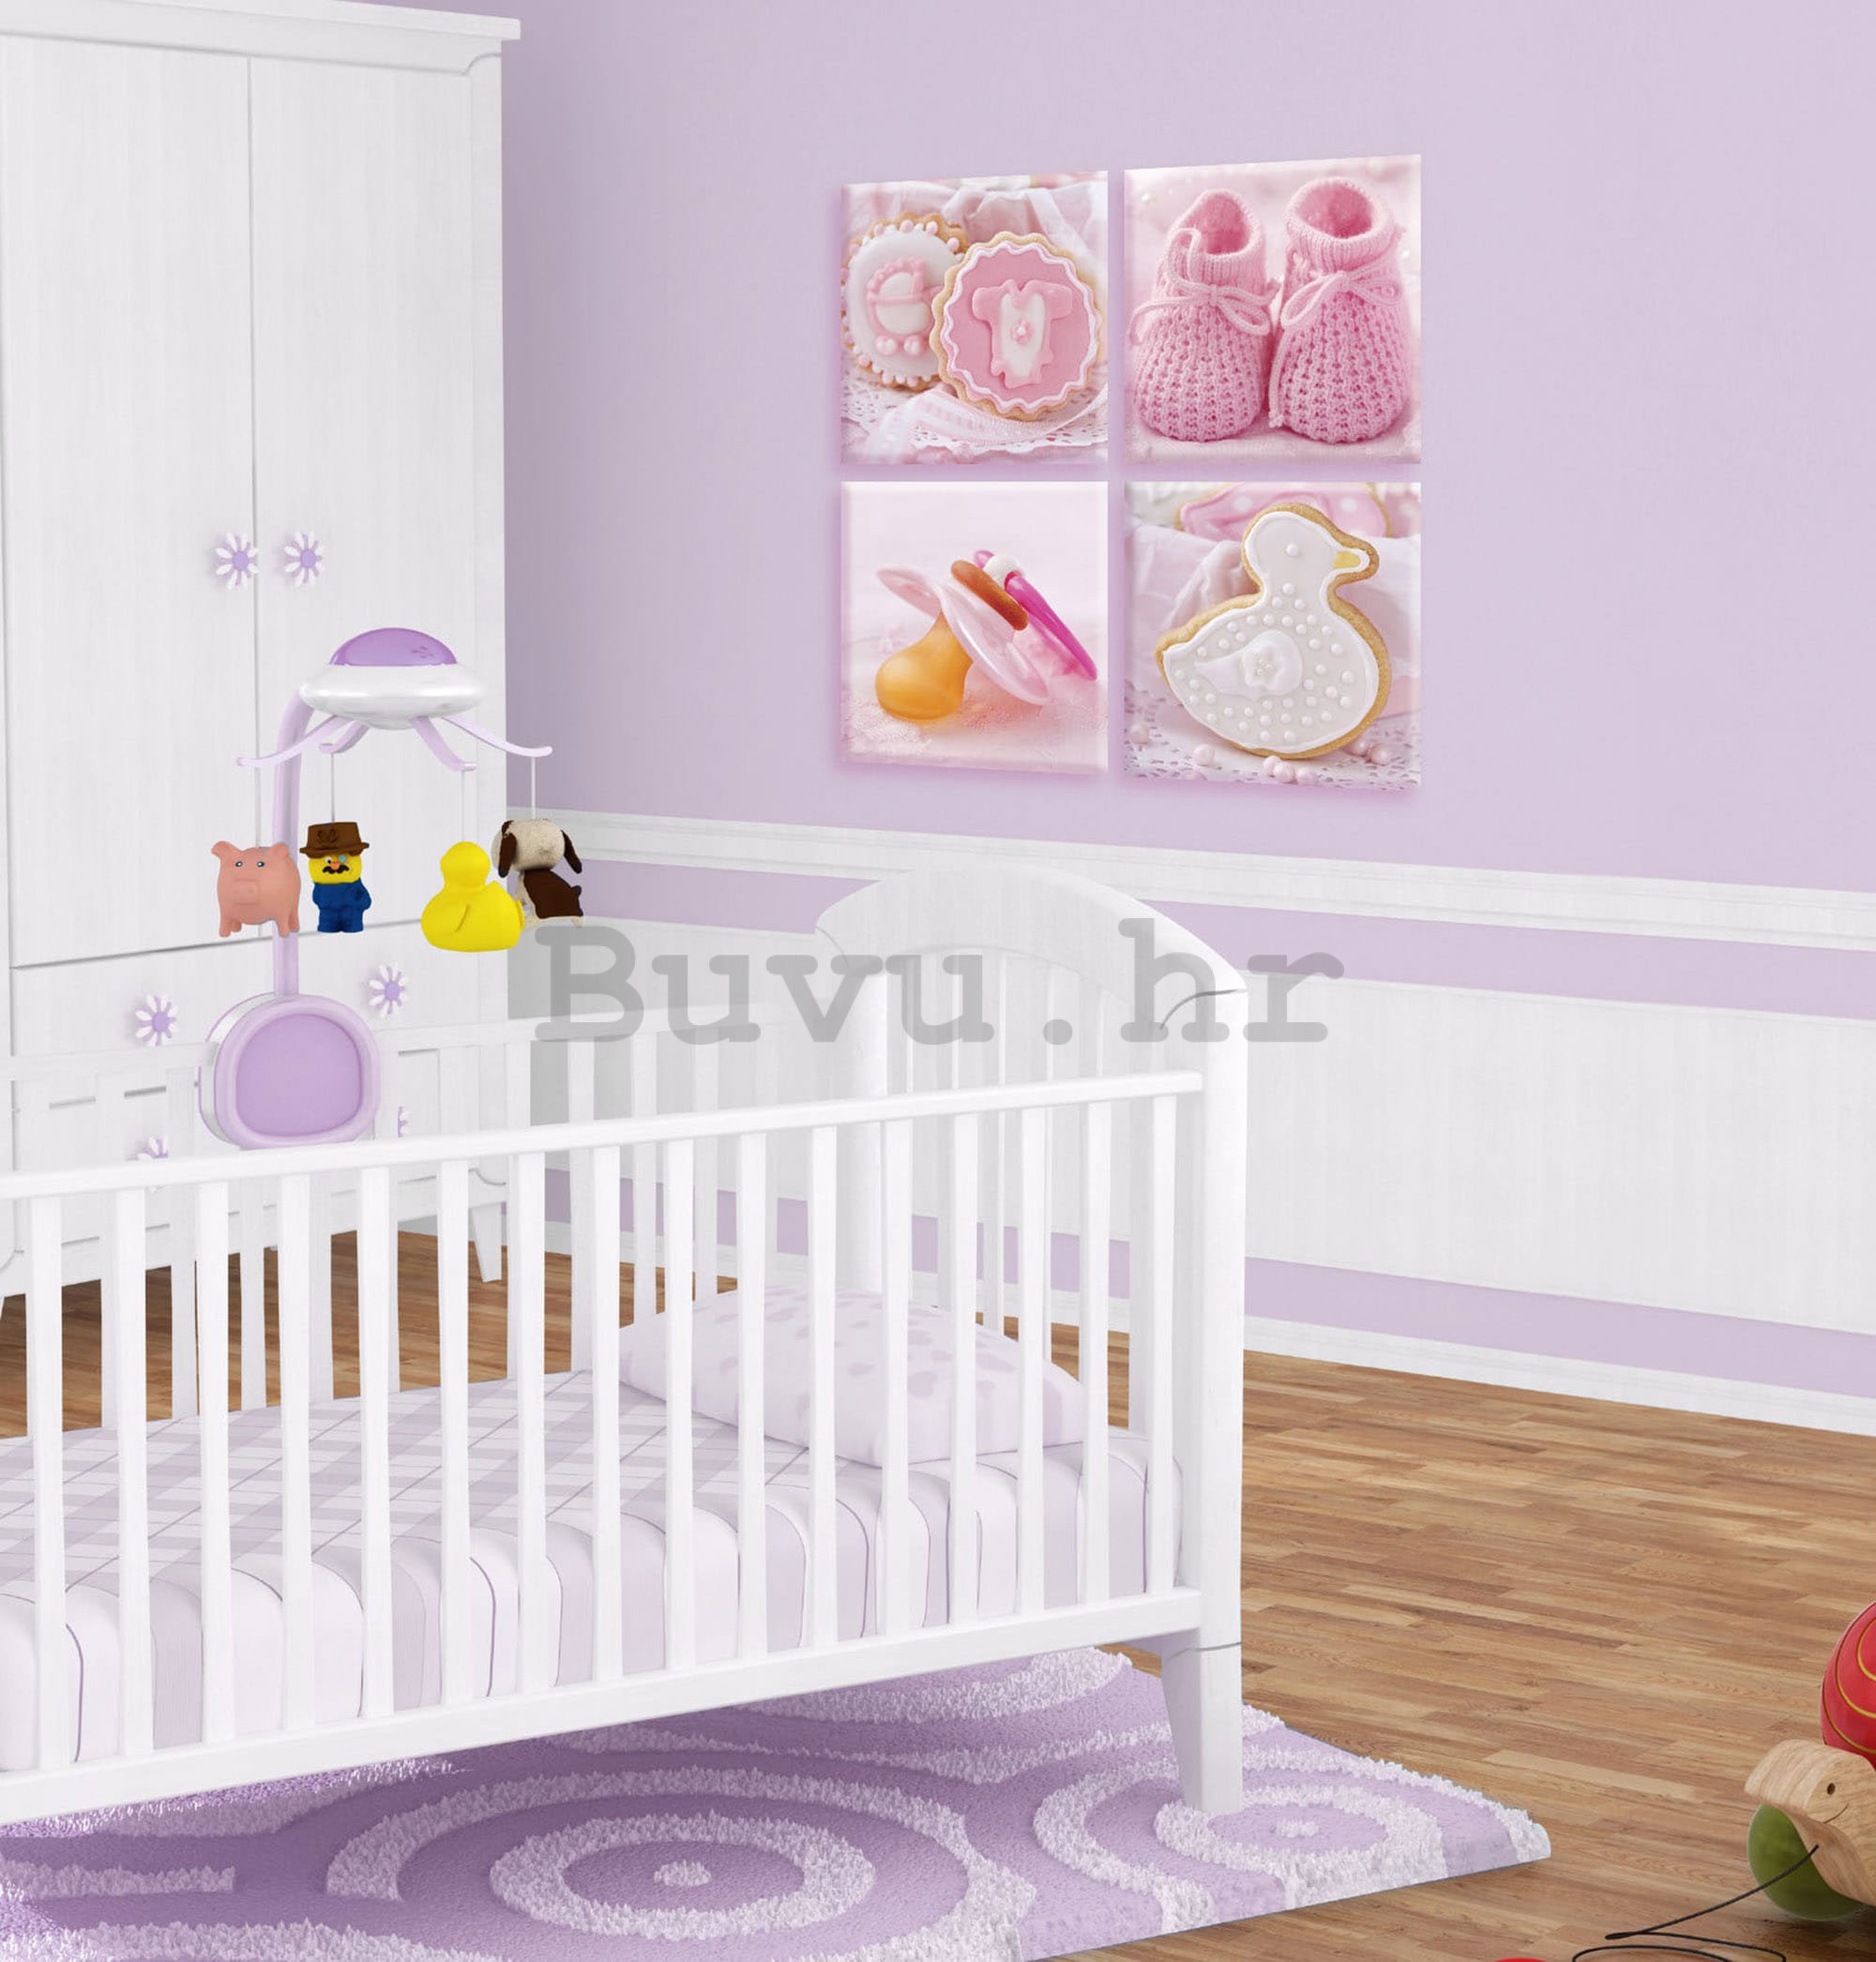 Slika na platnu: Ružičasti motivi bebe - set 4kom 25x25cm